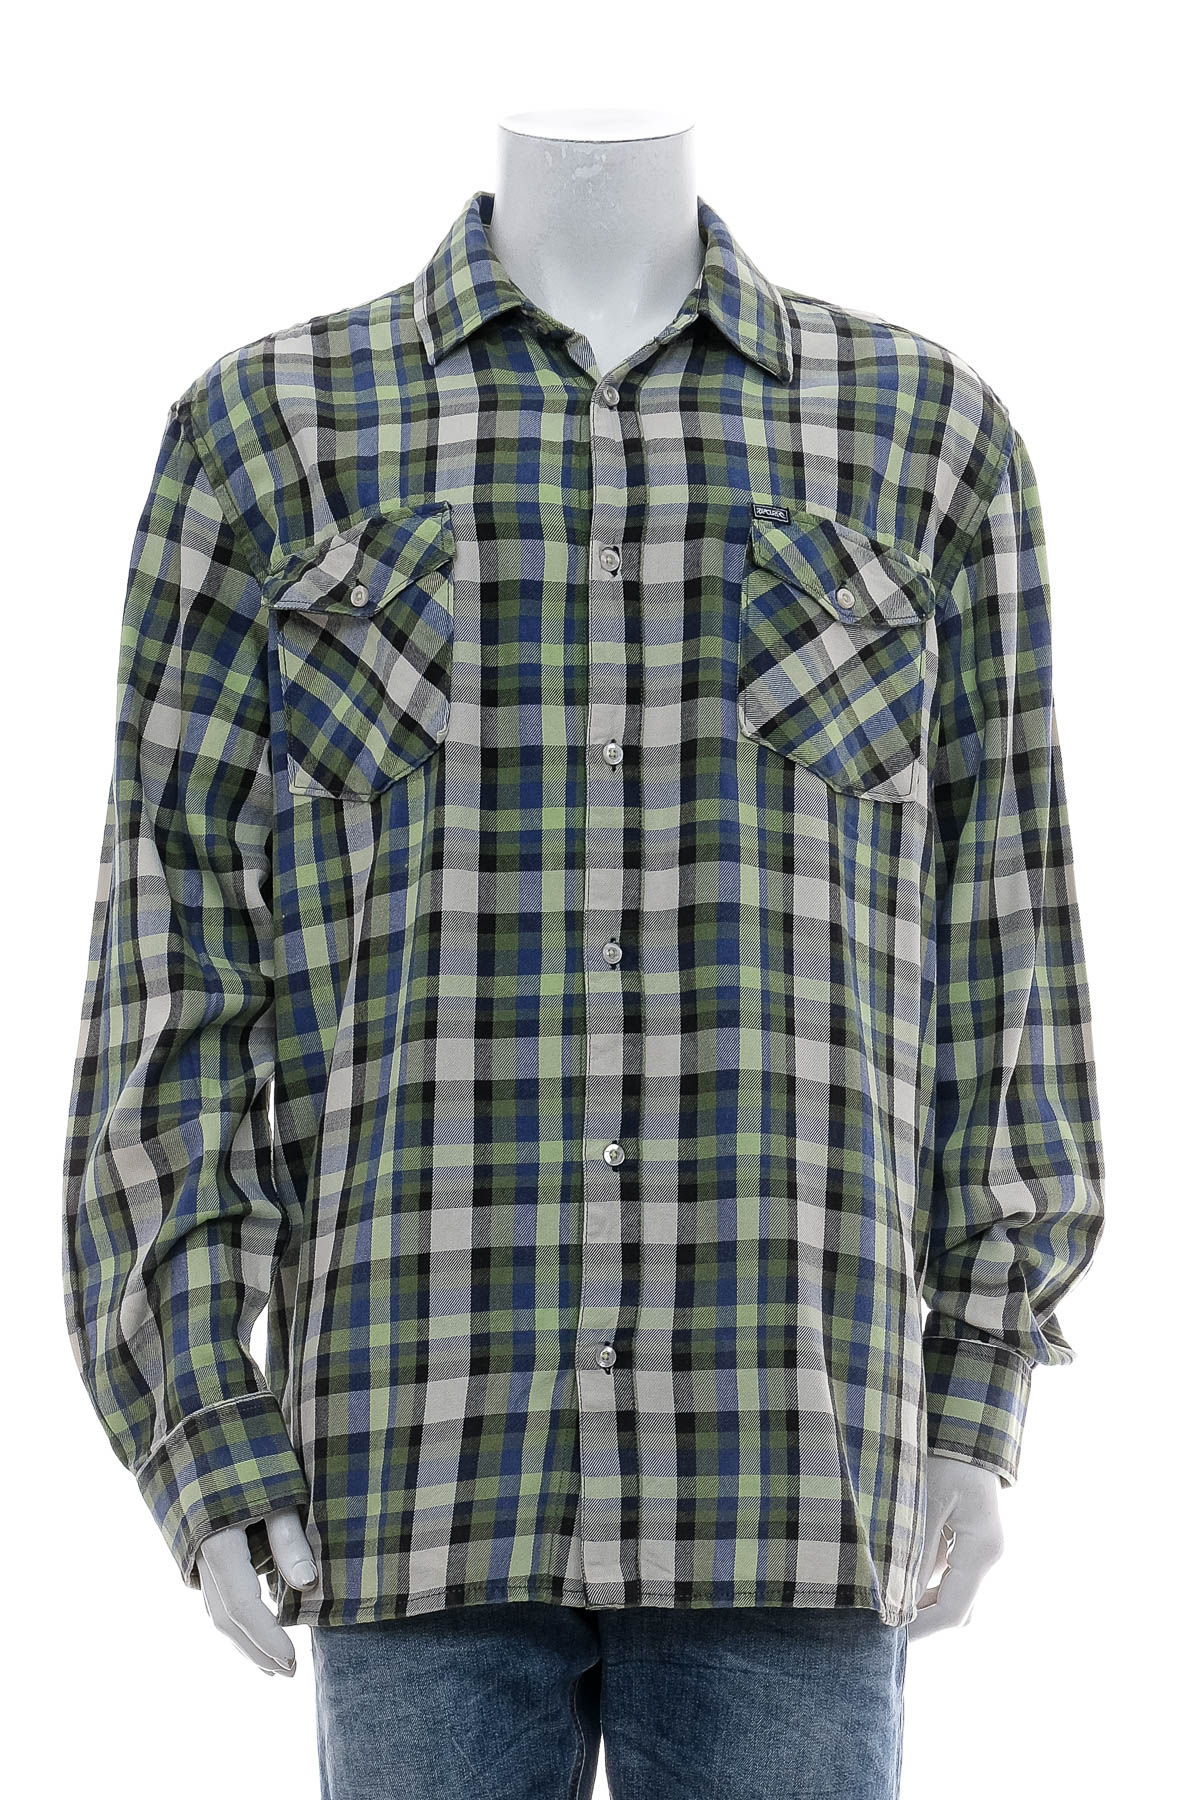 Ανδρικό πουκάμισο - RIPCURL - 0